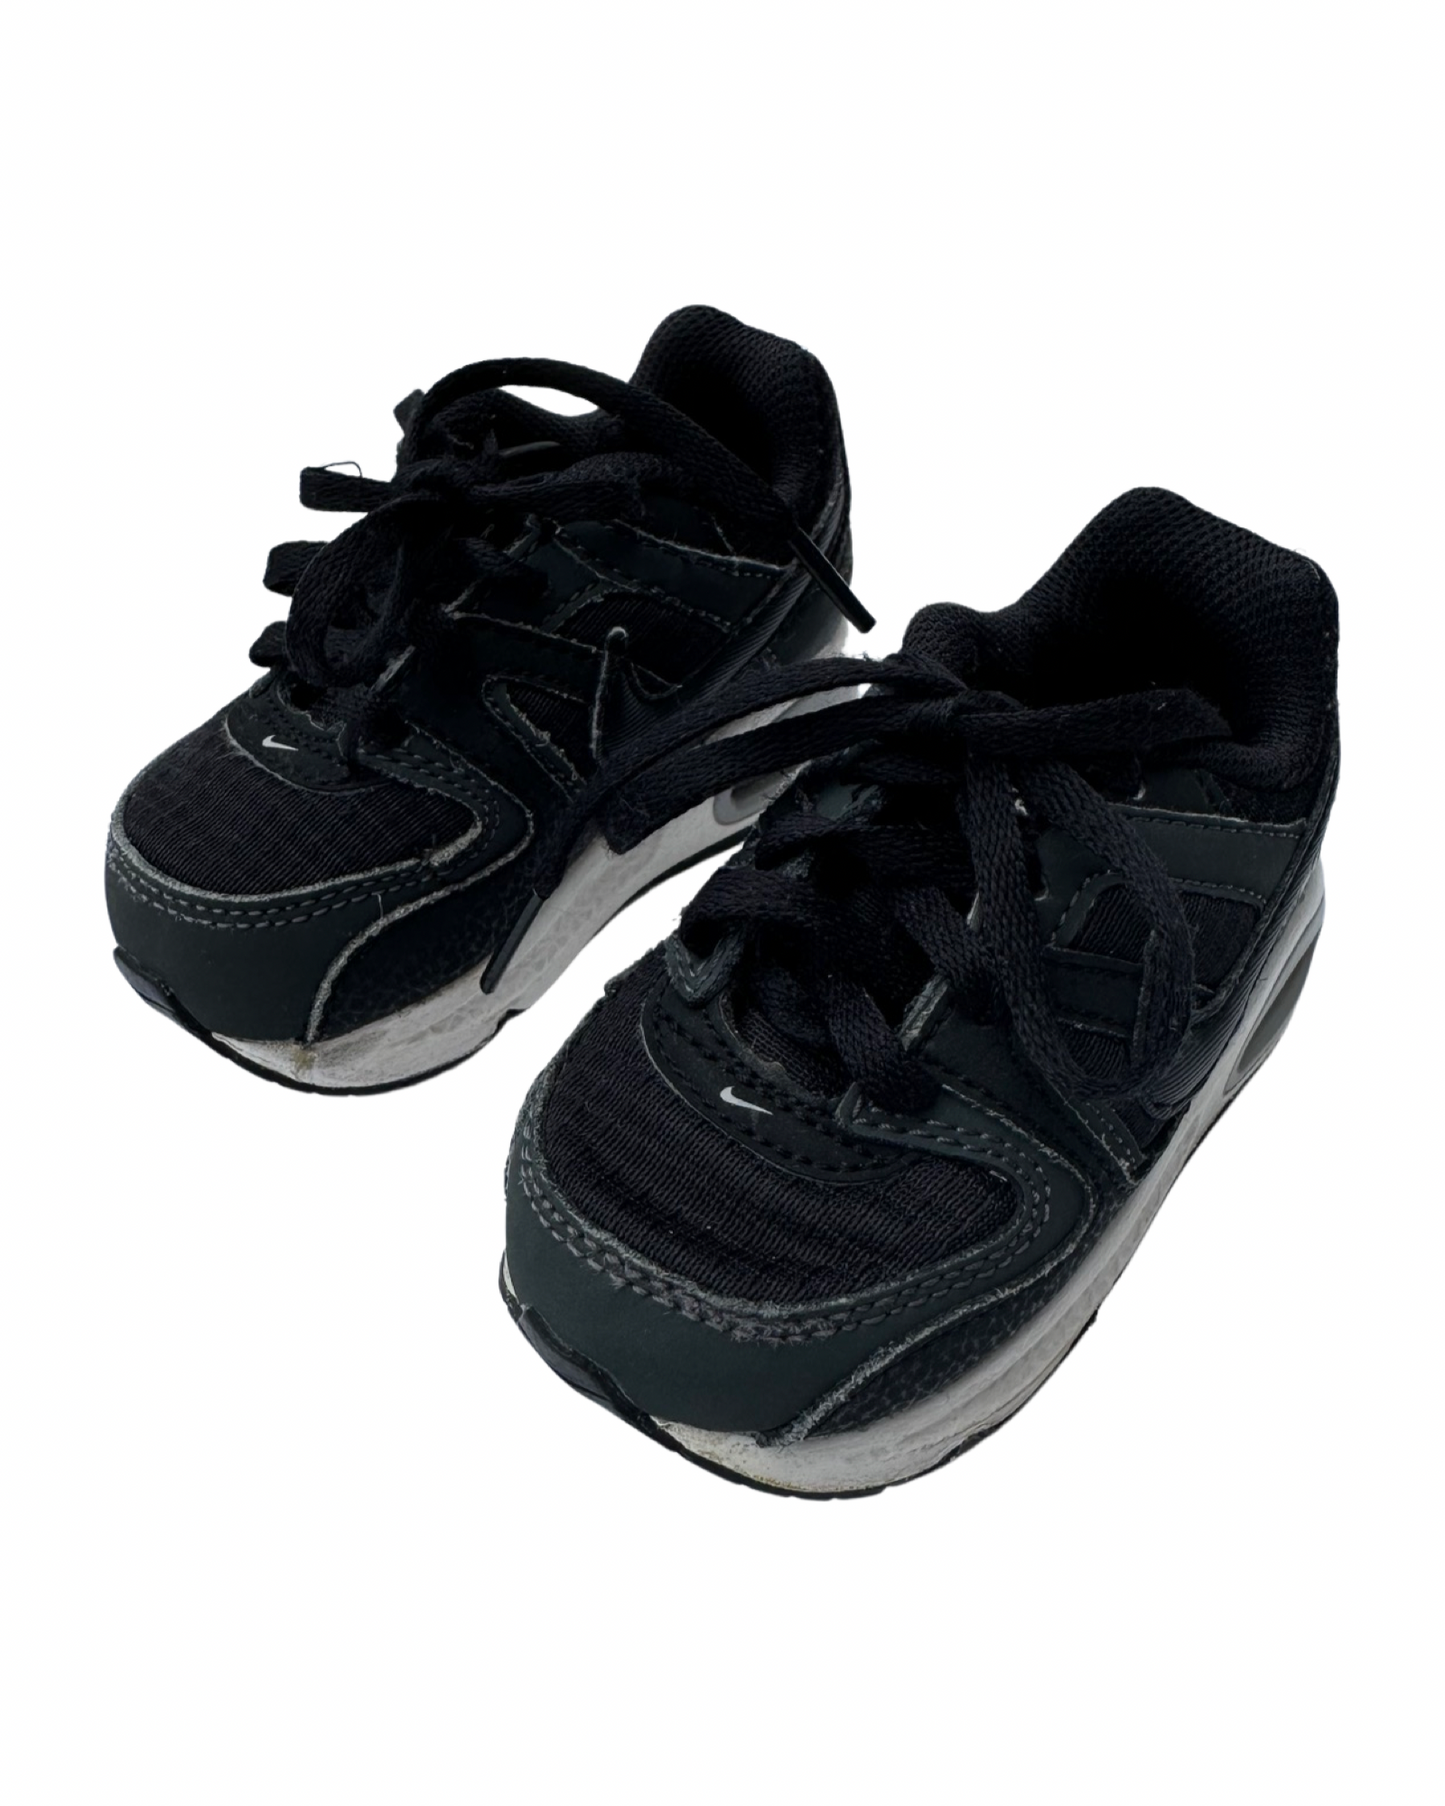 Nike Air Max Command Flex in black (UK4.5/EU21)